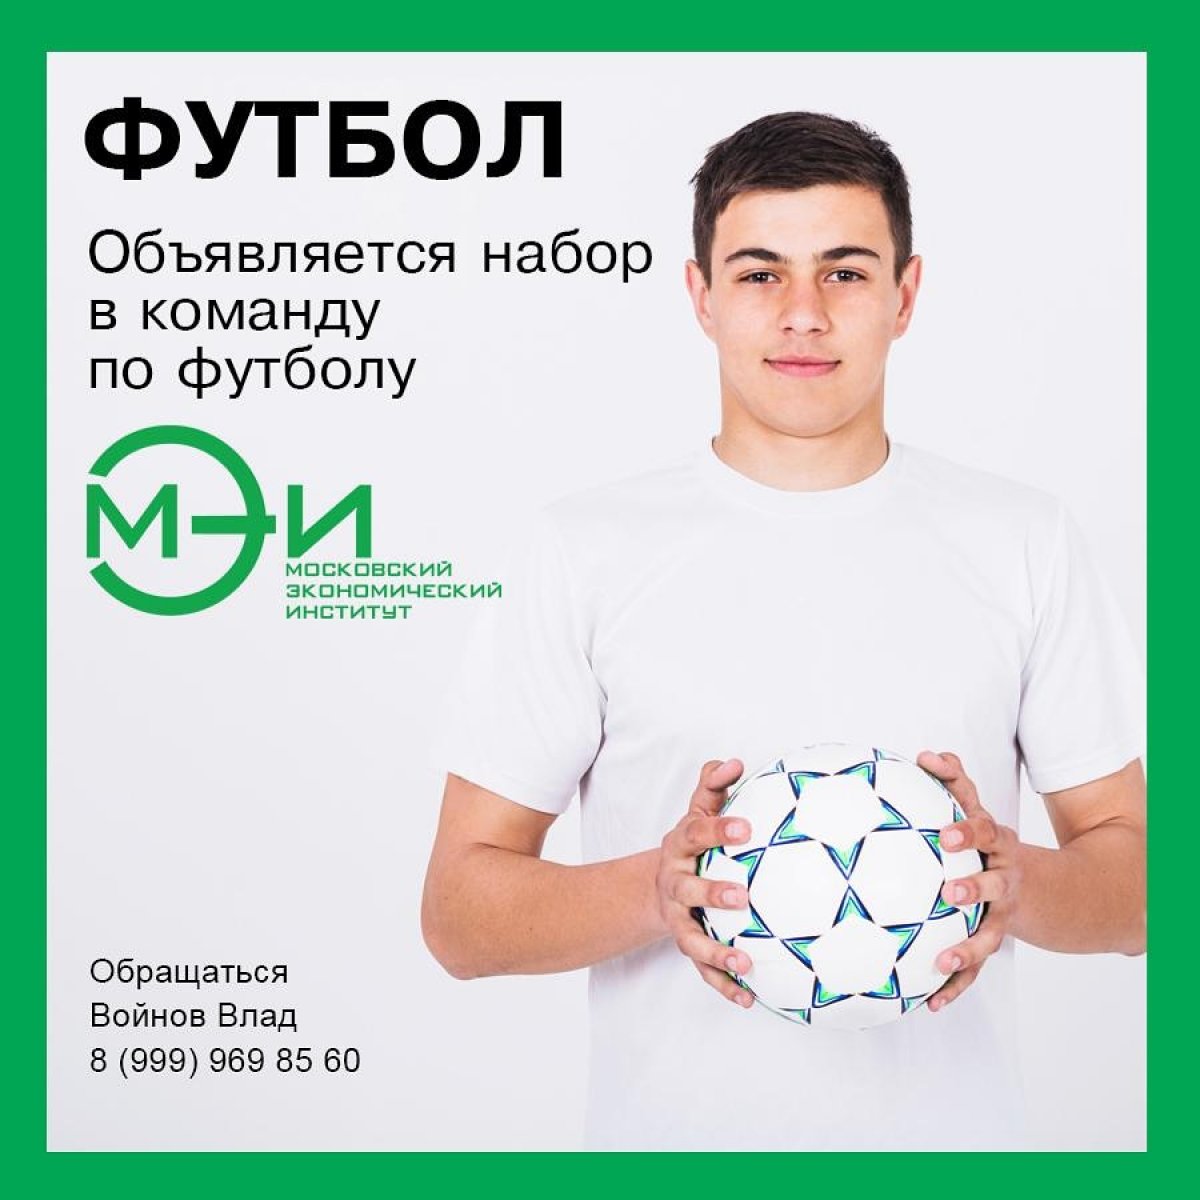 Ты хорошо играешь в футбол и учишься в нашем институте?!⚽